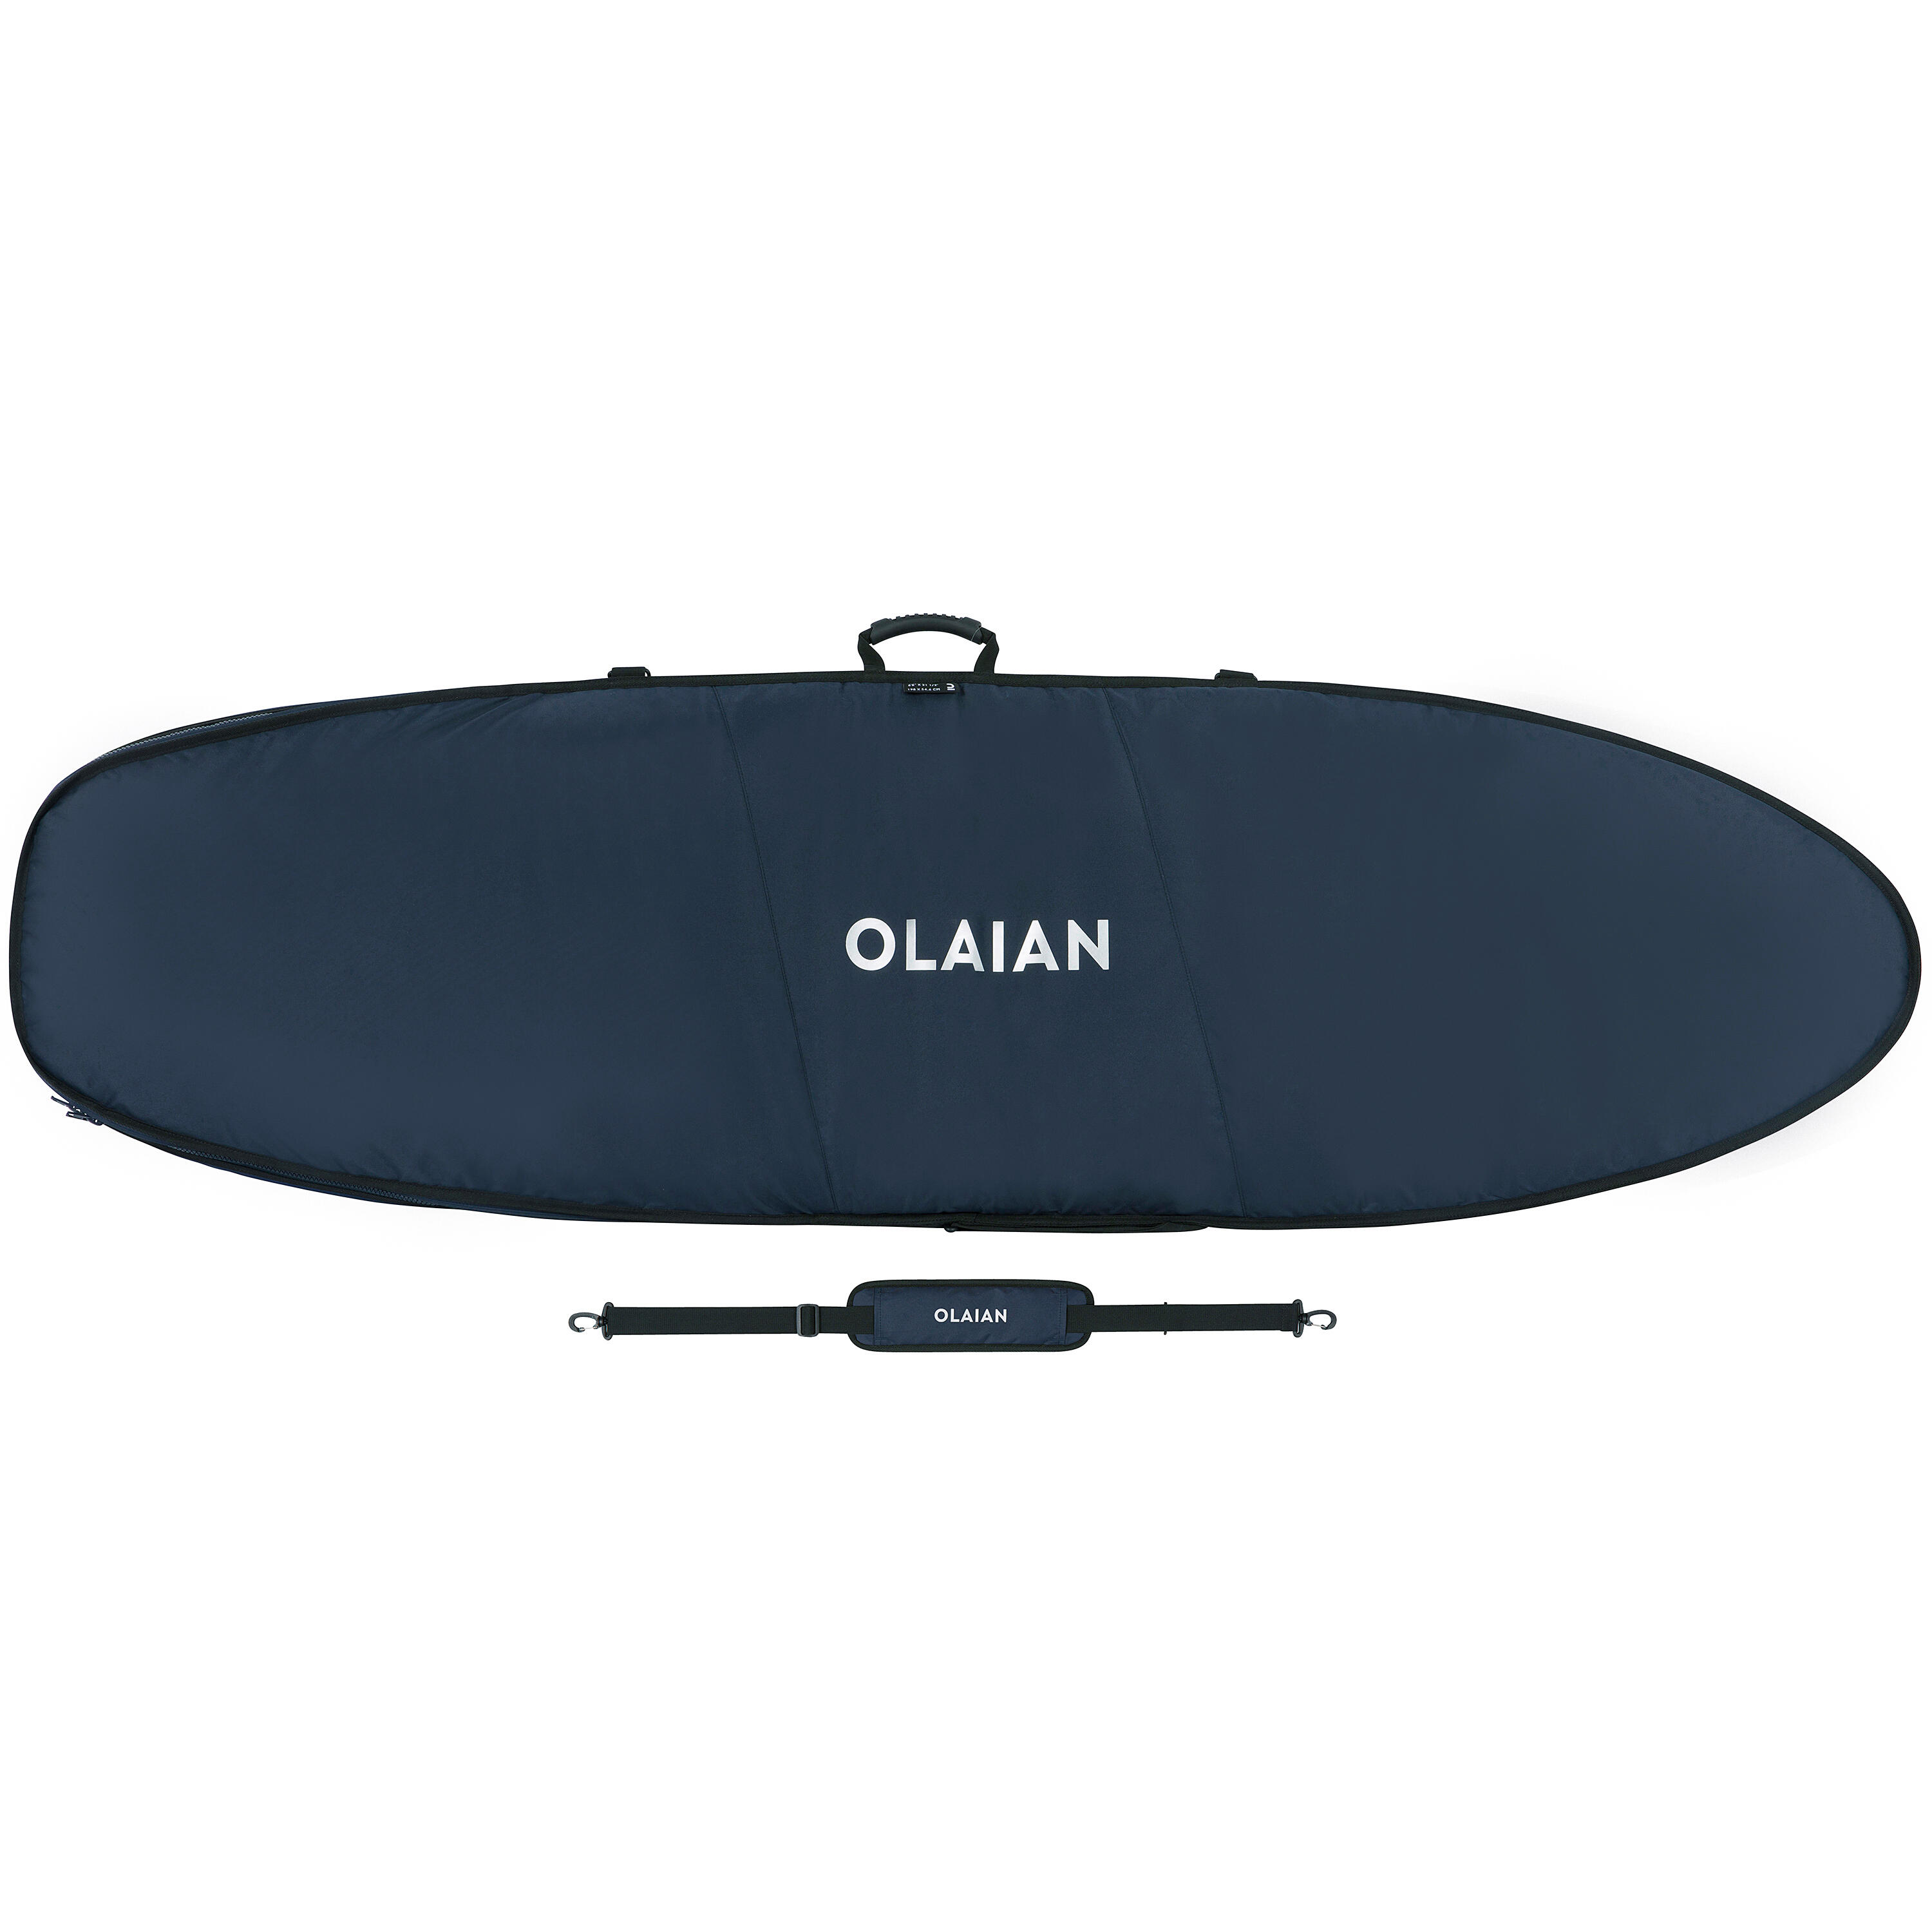 OLAIAN Boardbag Surfboard 900 max. 6'6